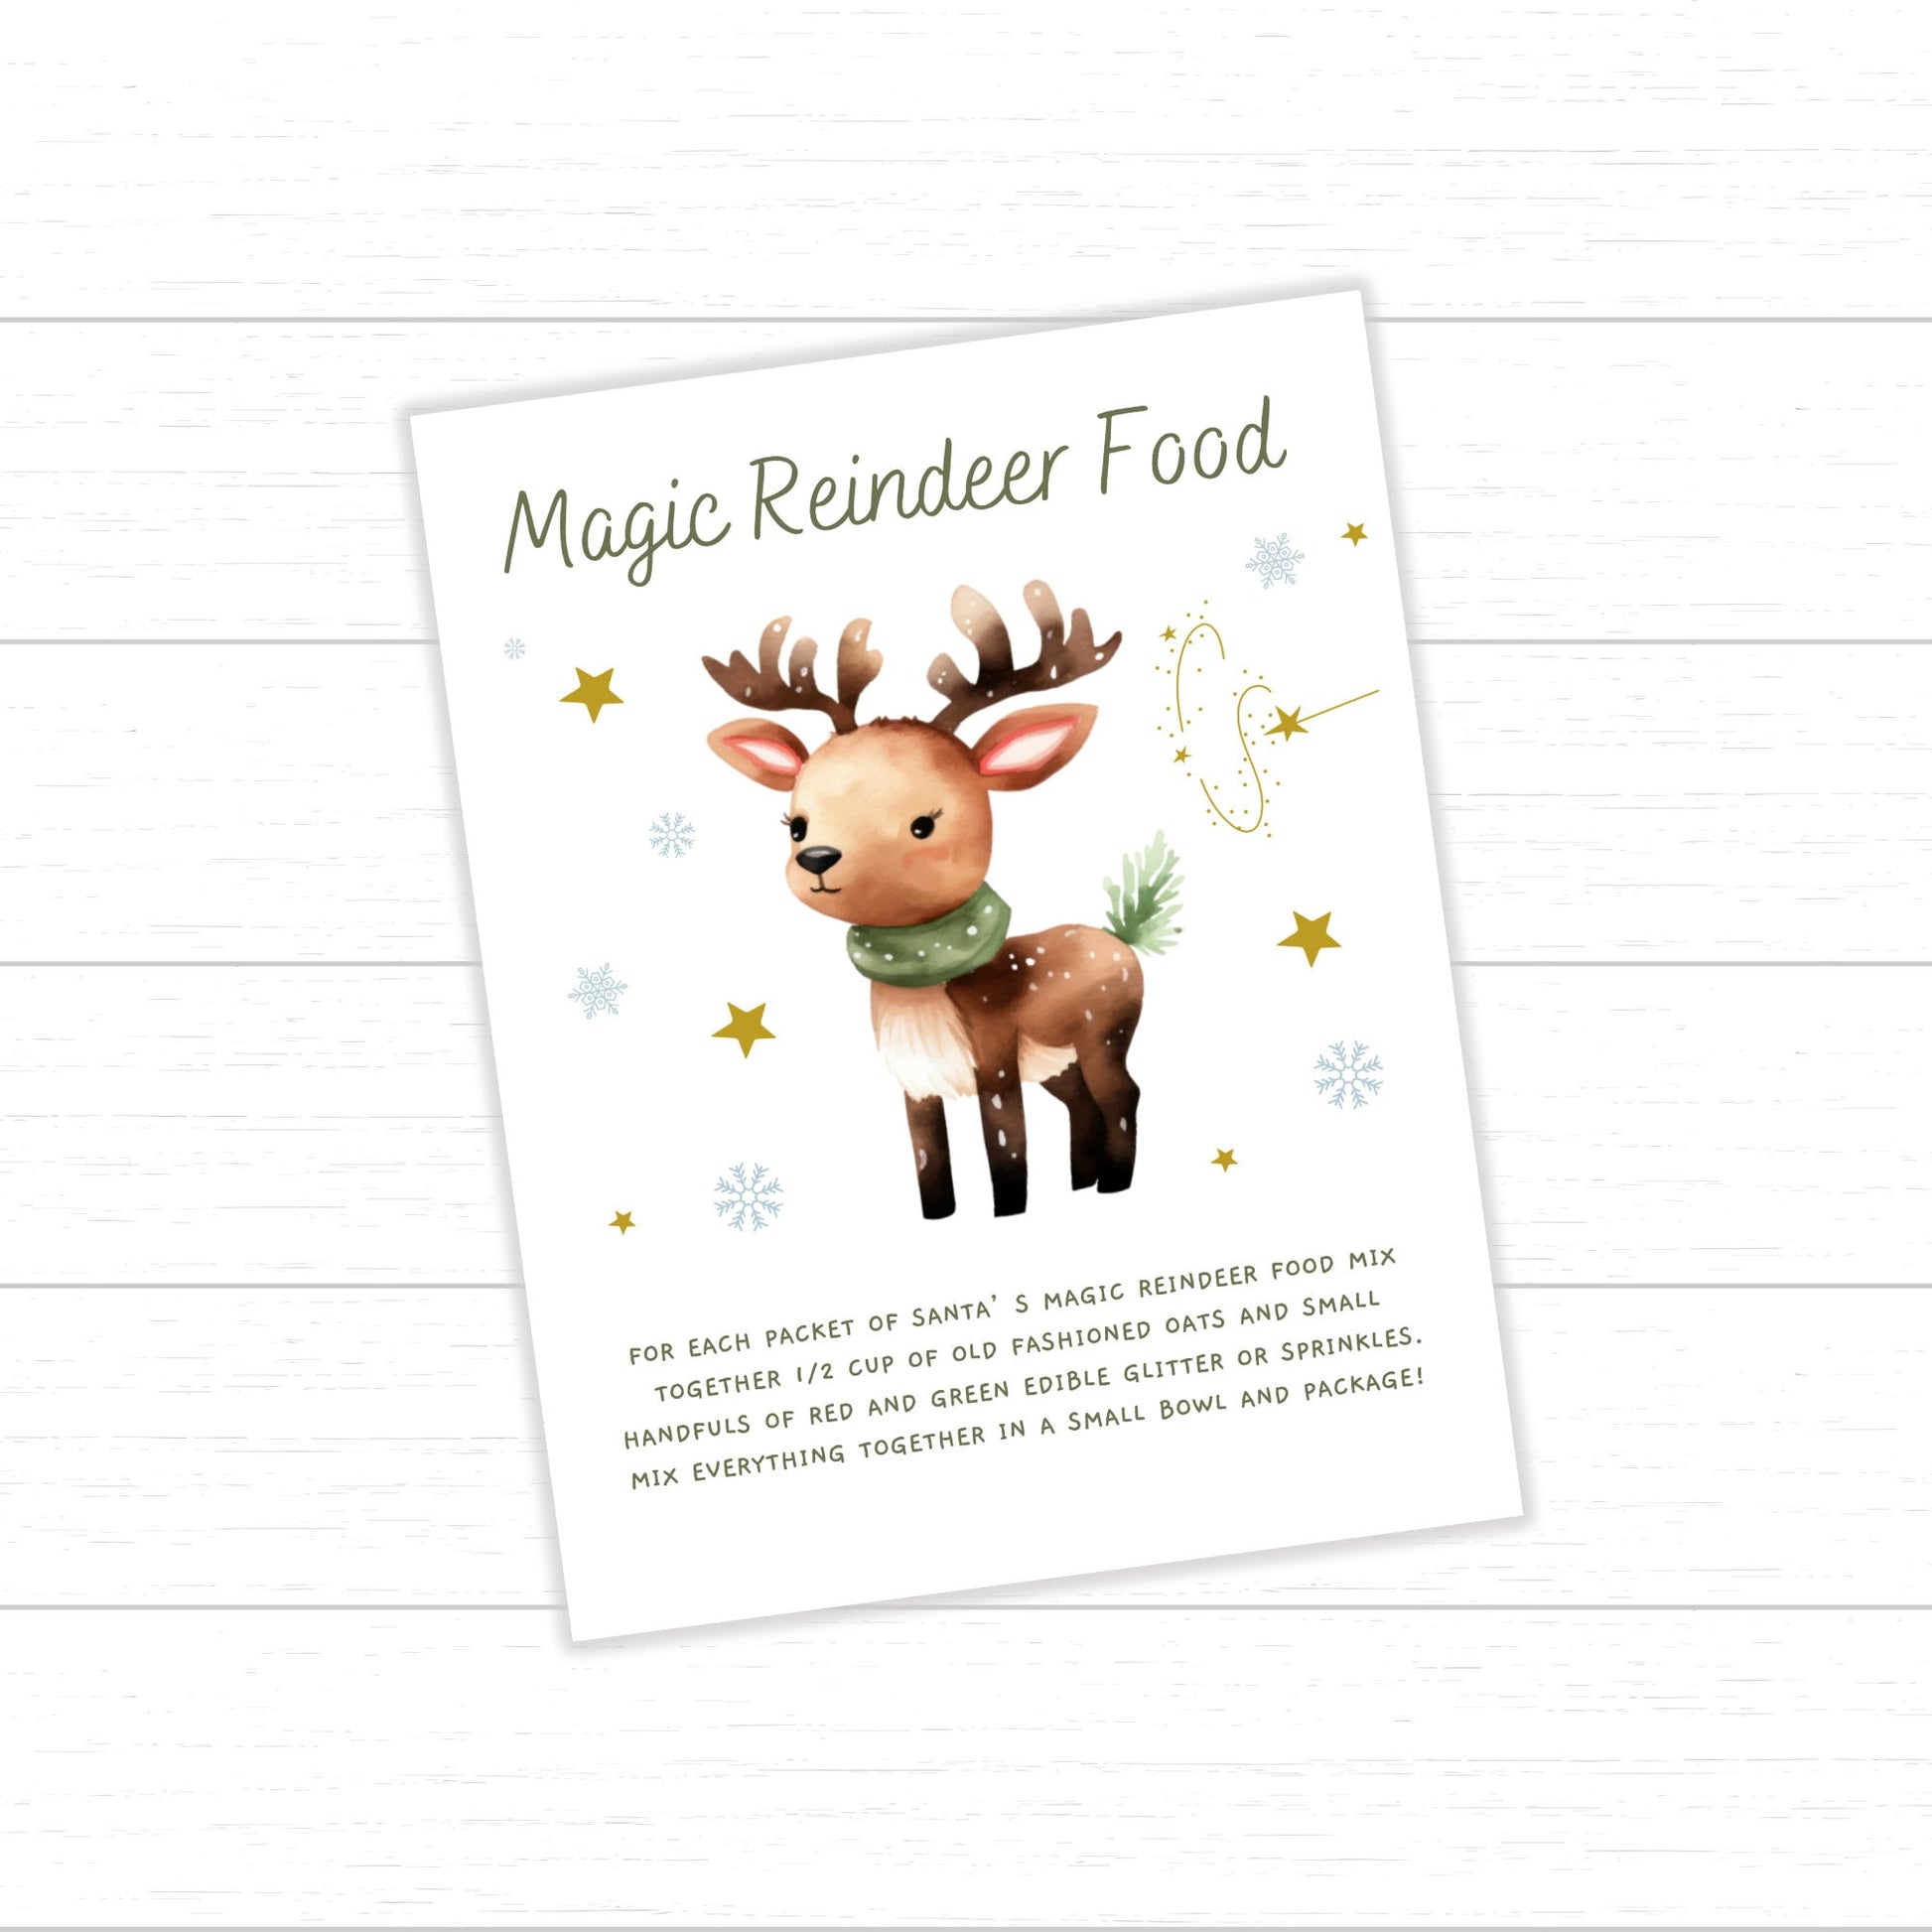 Reindeer Food Tags and Bag Toppers, Reindeer Food Recipe, Magic Reindeer Food Treat Tags and Bag Toppers, Magic Reindeer Food Bag Toppers